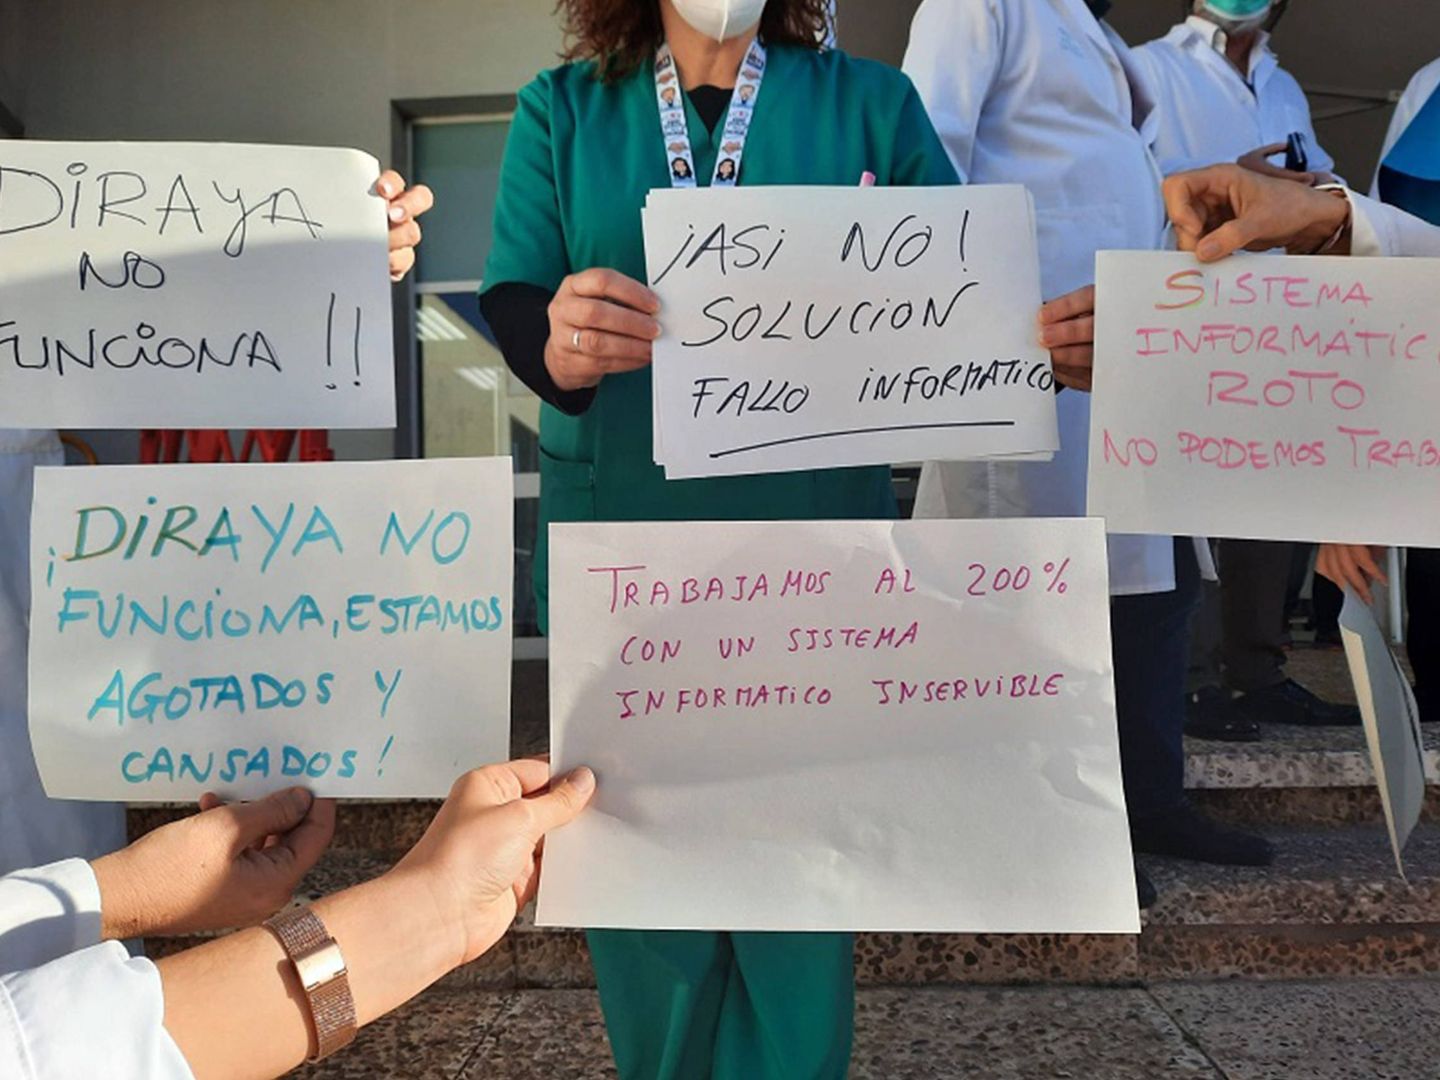 Protestas de facultativos contra Diraya. (Sindicato de Médicos de Málaga)